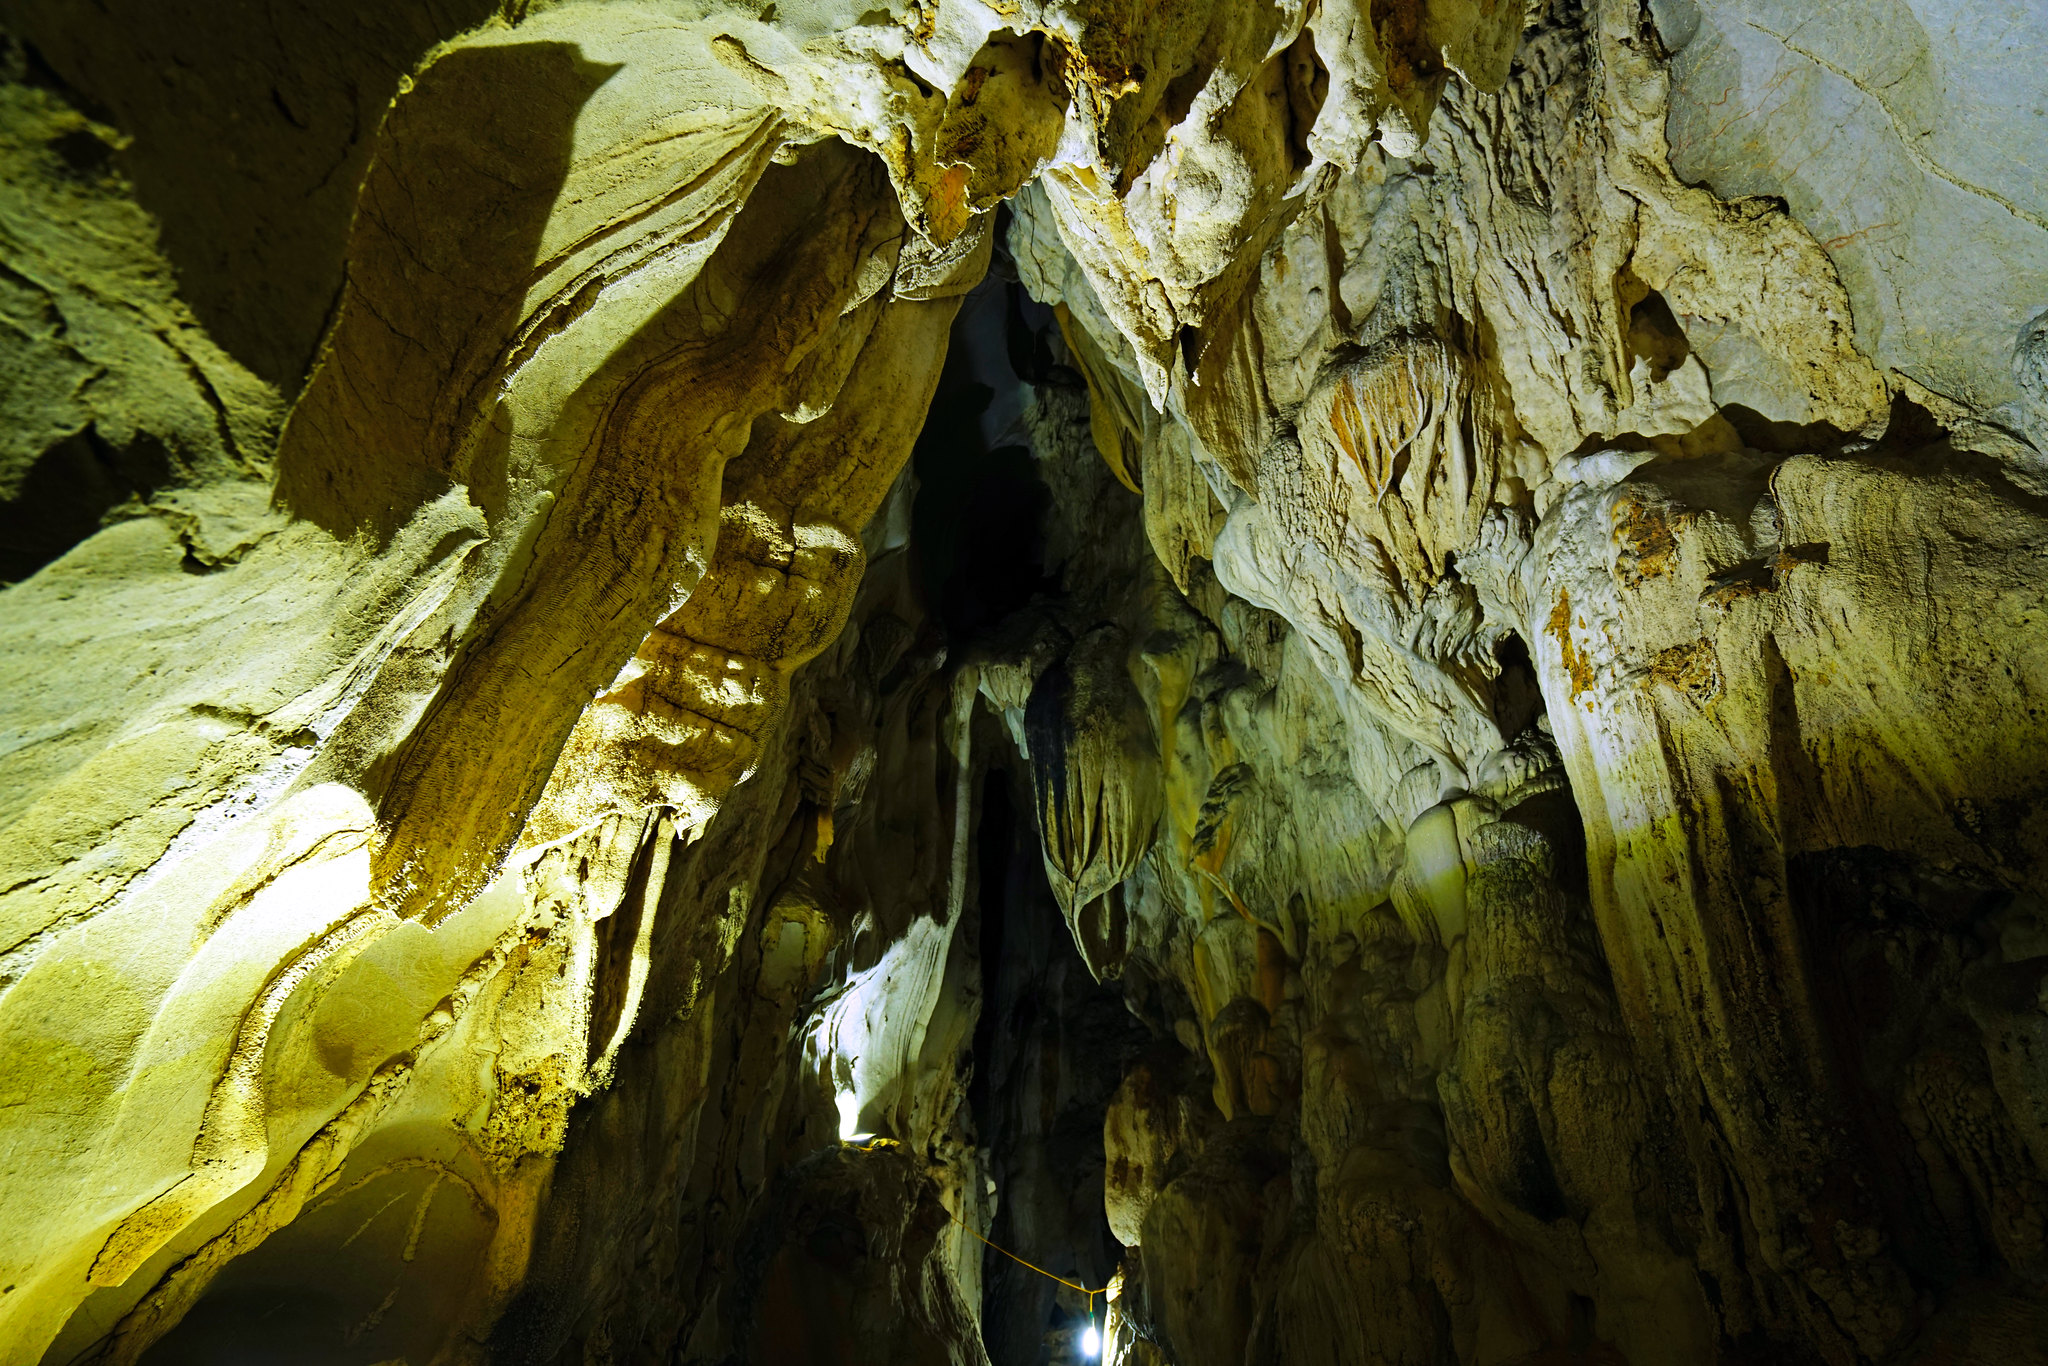 Trung Trang Cave - Halong Bay Cave 